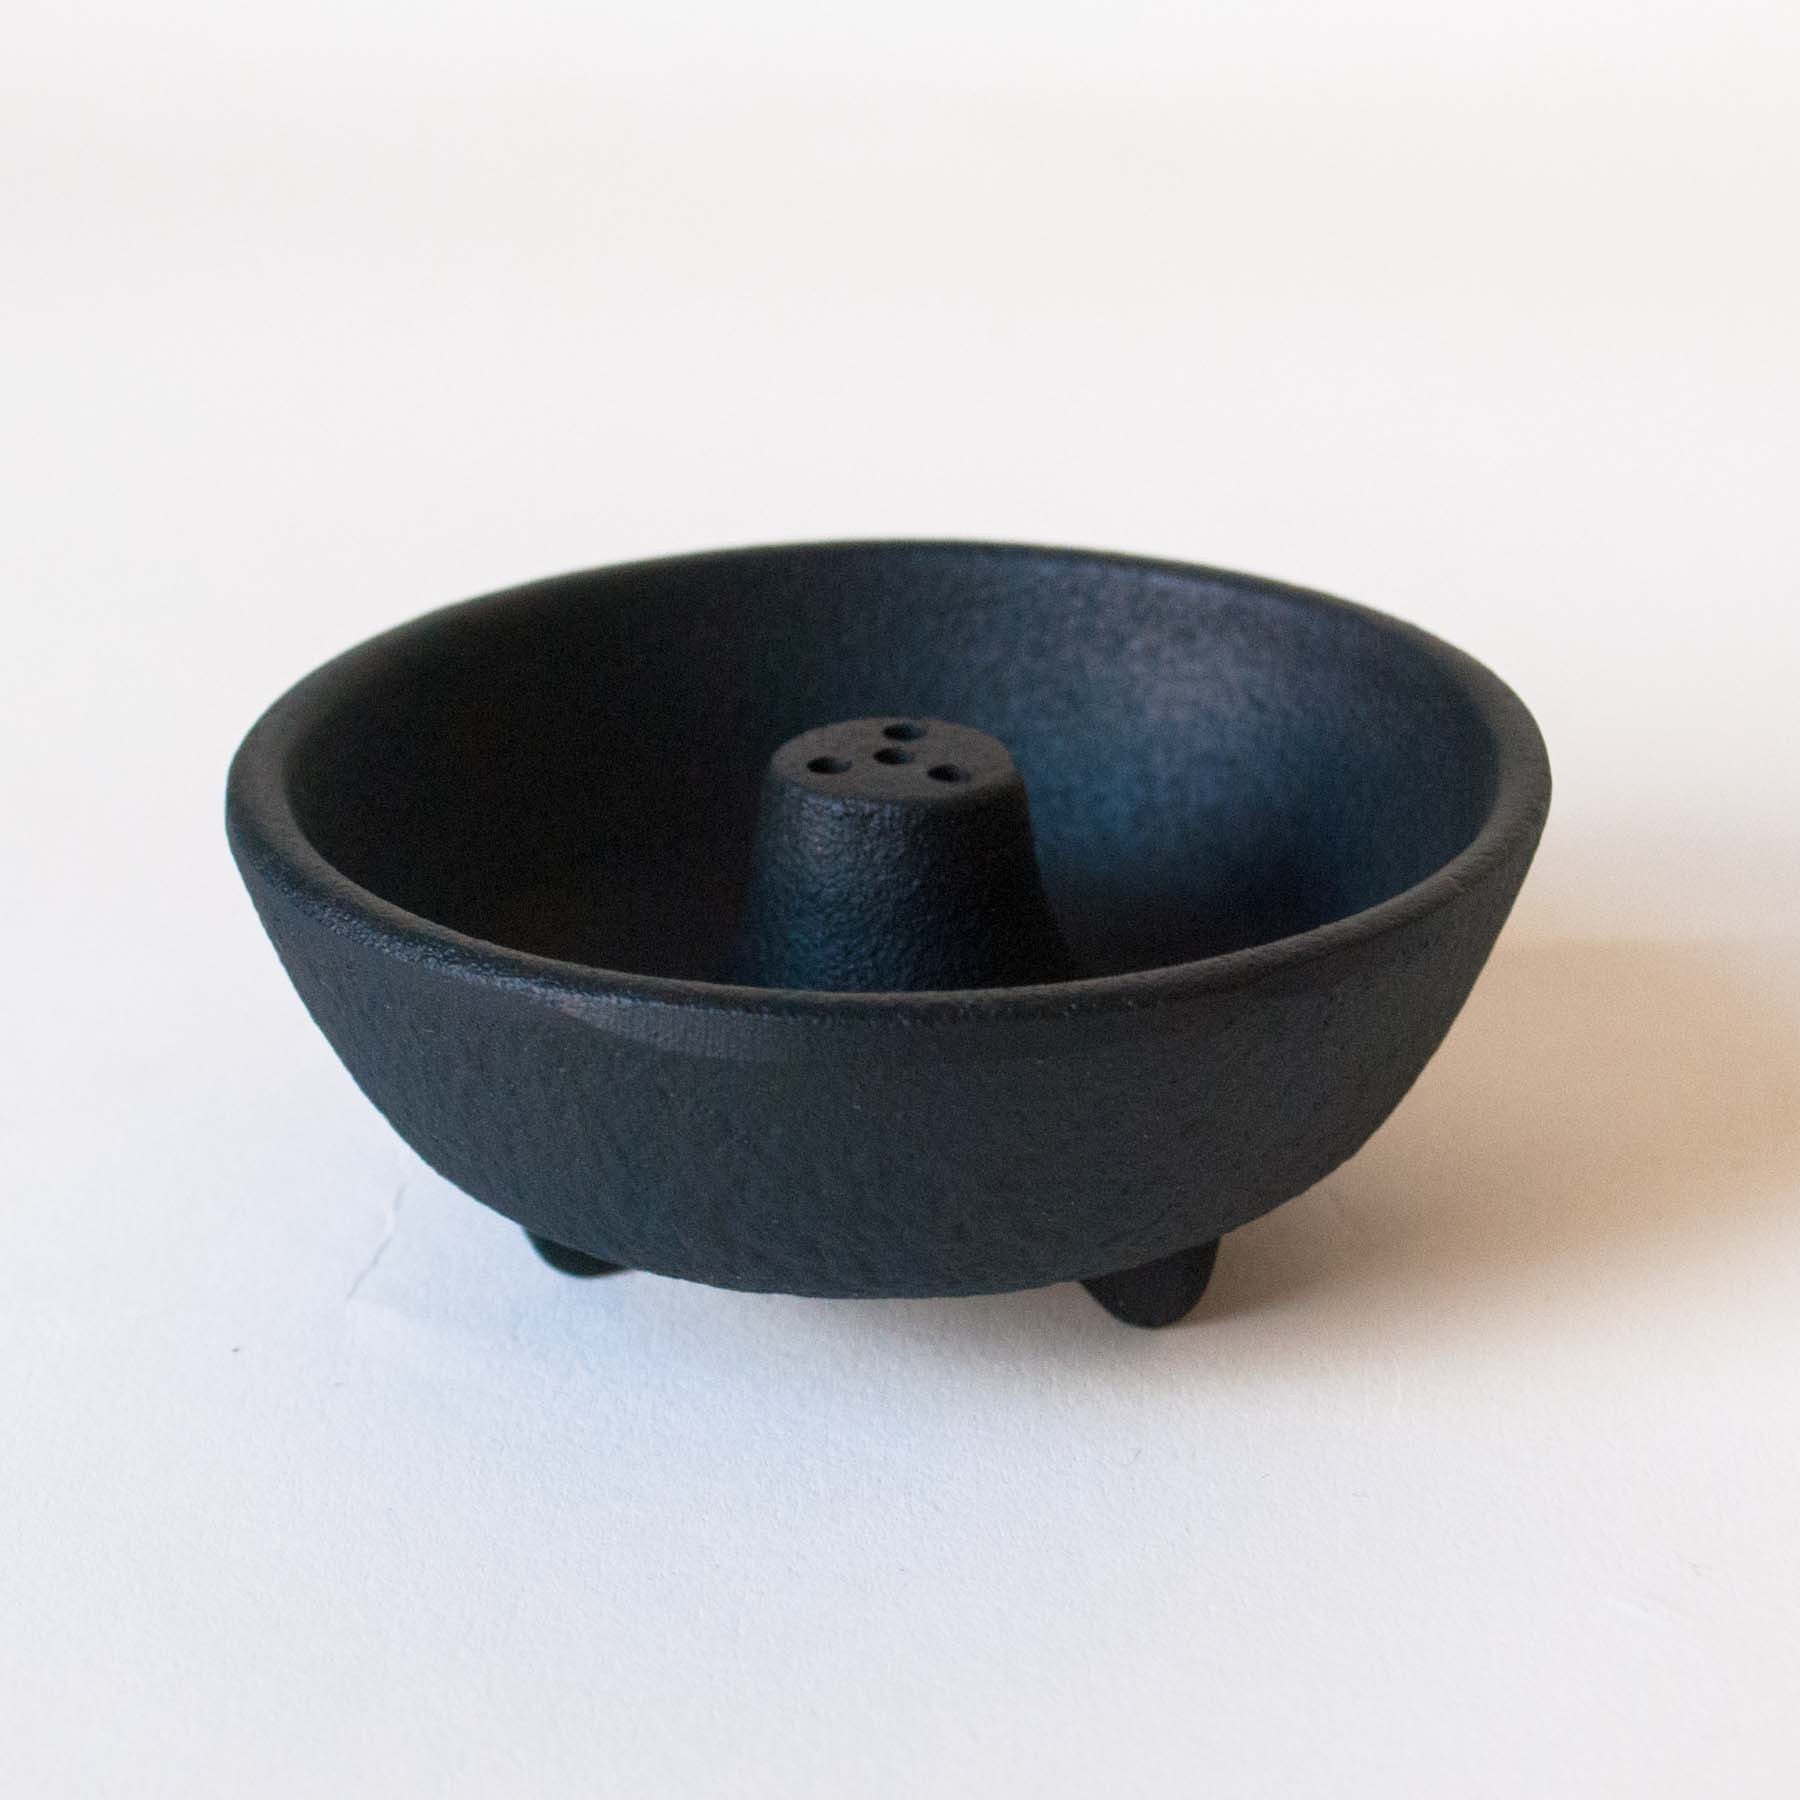 https://omoionline.com/cdn/shop/products/cast-iron-incense-burner-black-stick-urn-2.jpg?v=1704233508